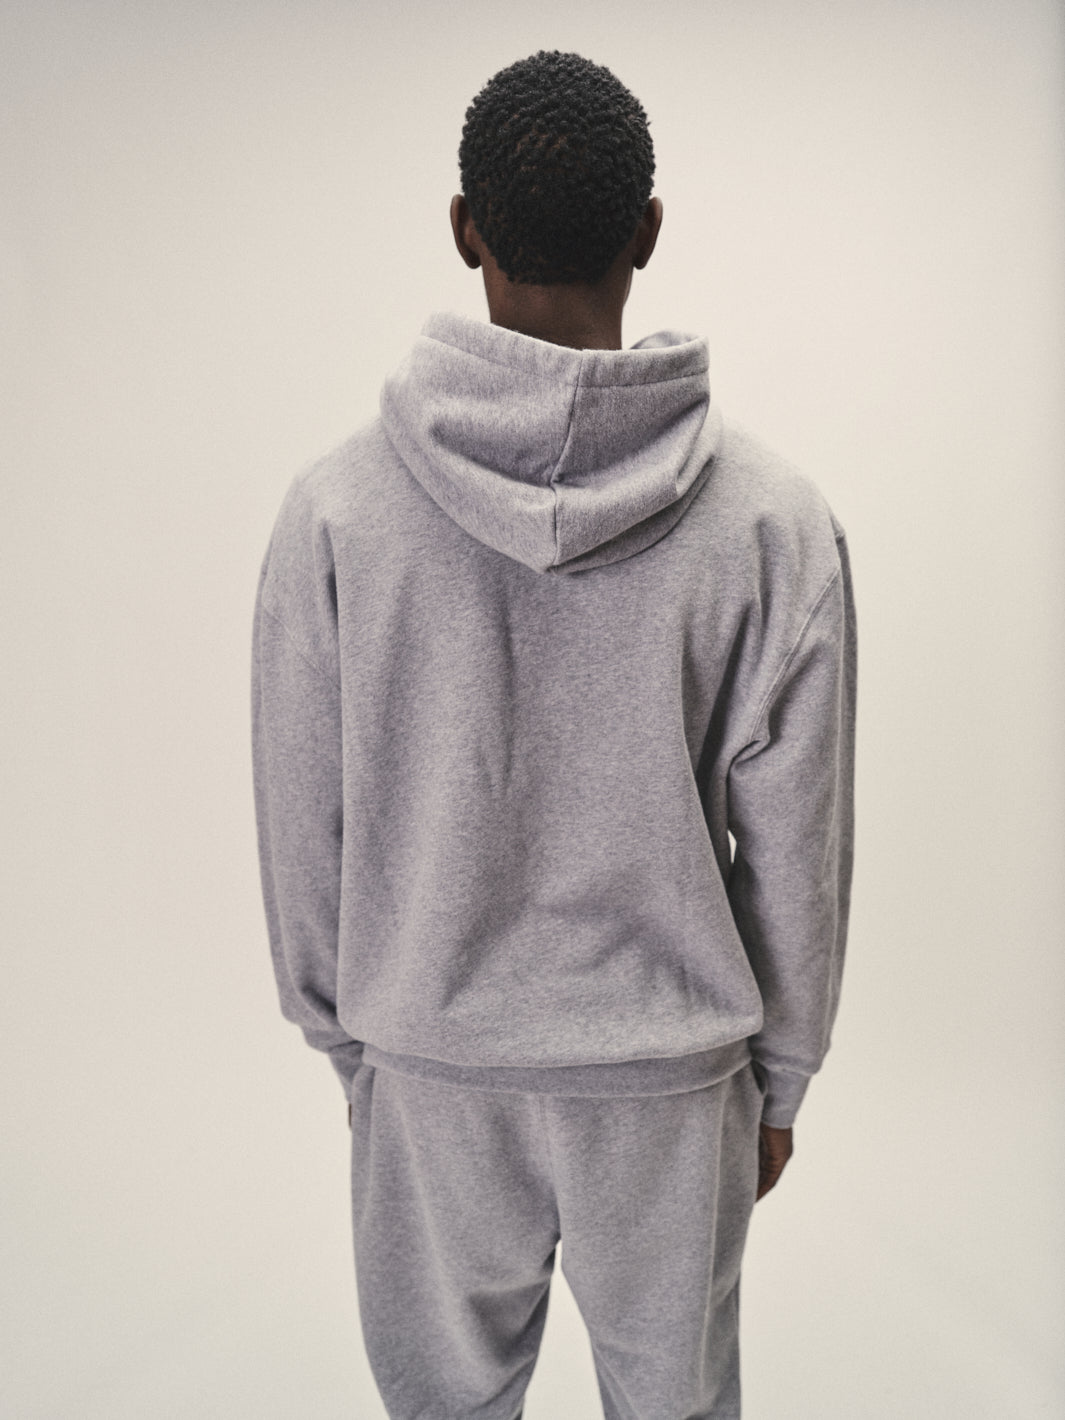 Nachhaltiges Männer Kapuzen Sweatshirt oversized grey melange in Portugal hergestellt